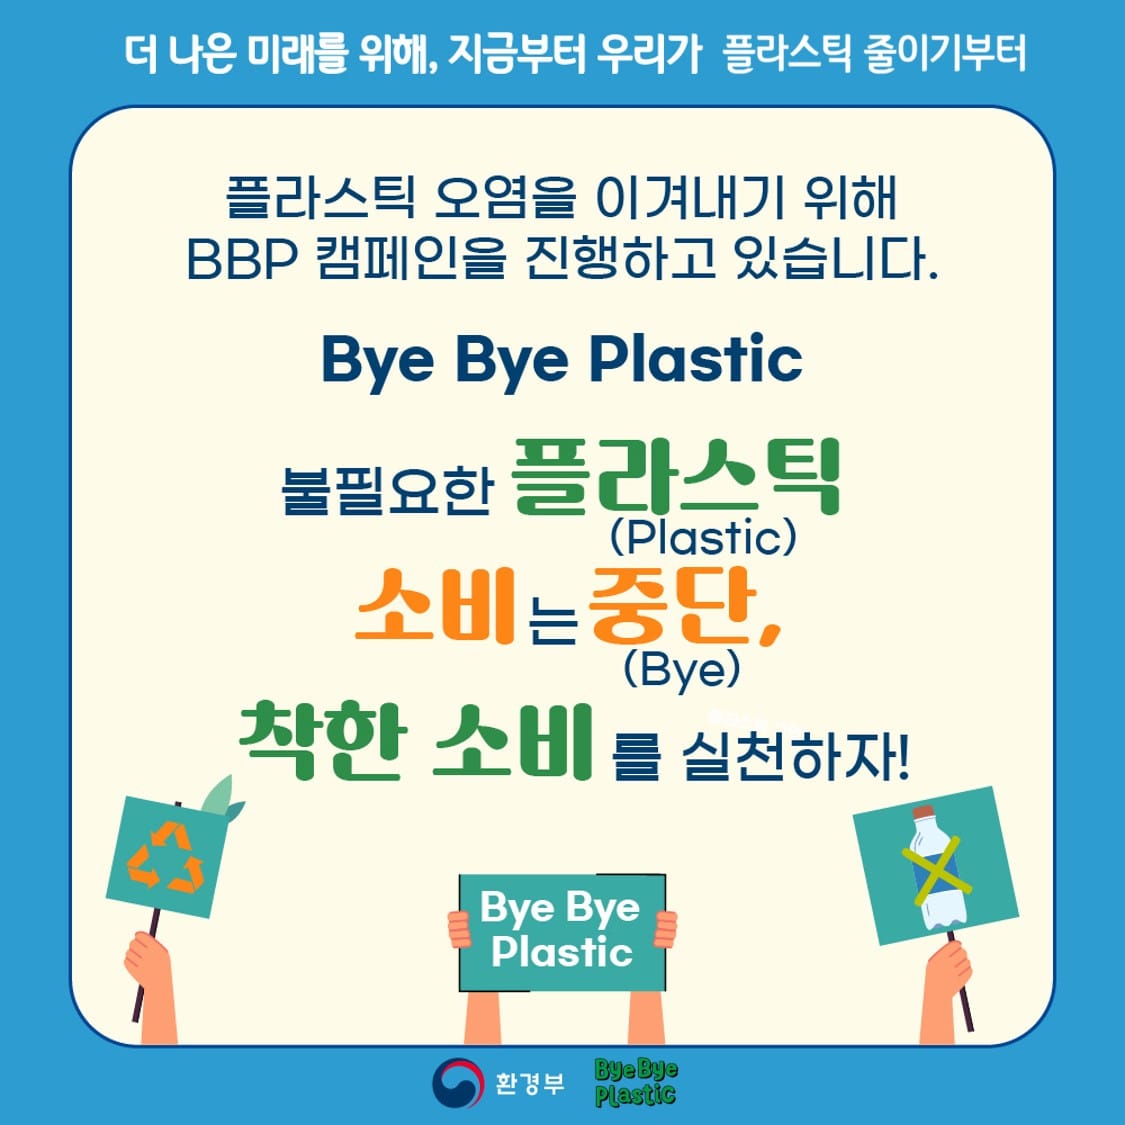 더 나은 미래를 위해, 지금부터 우리가 플라스틱 줄이기부터
플라스틱 오염을 이겨내기 위해 BBP 캠페인을 진행하고 있습니다.
Bye Bye Plastic
불필요한 플라스틱(Plastic) 소비는 중단,(Bye) 착한 소비를 실천하자!
Bye Bye Plastic
환경부 Bye Bye Plastic